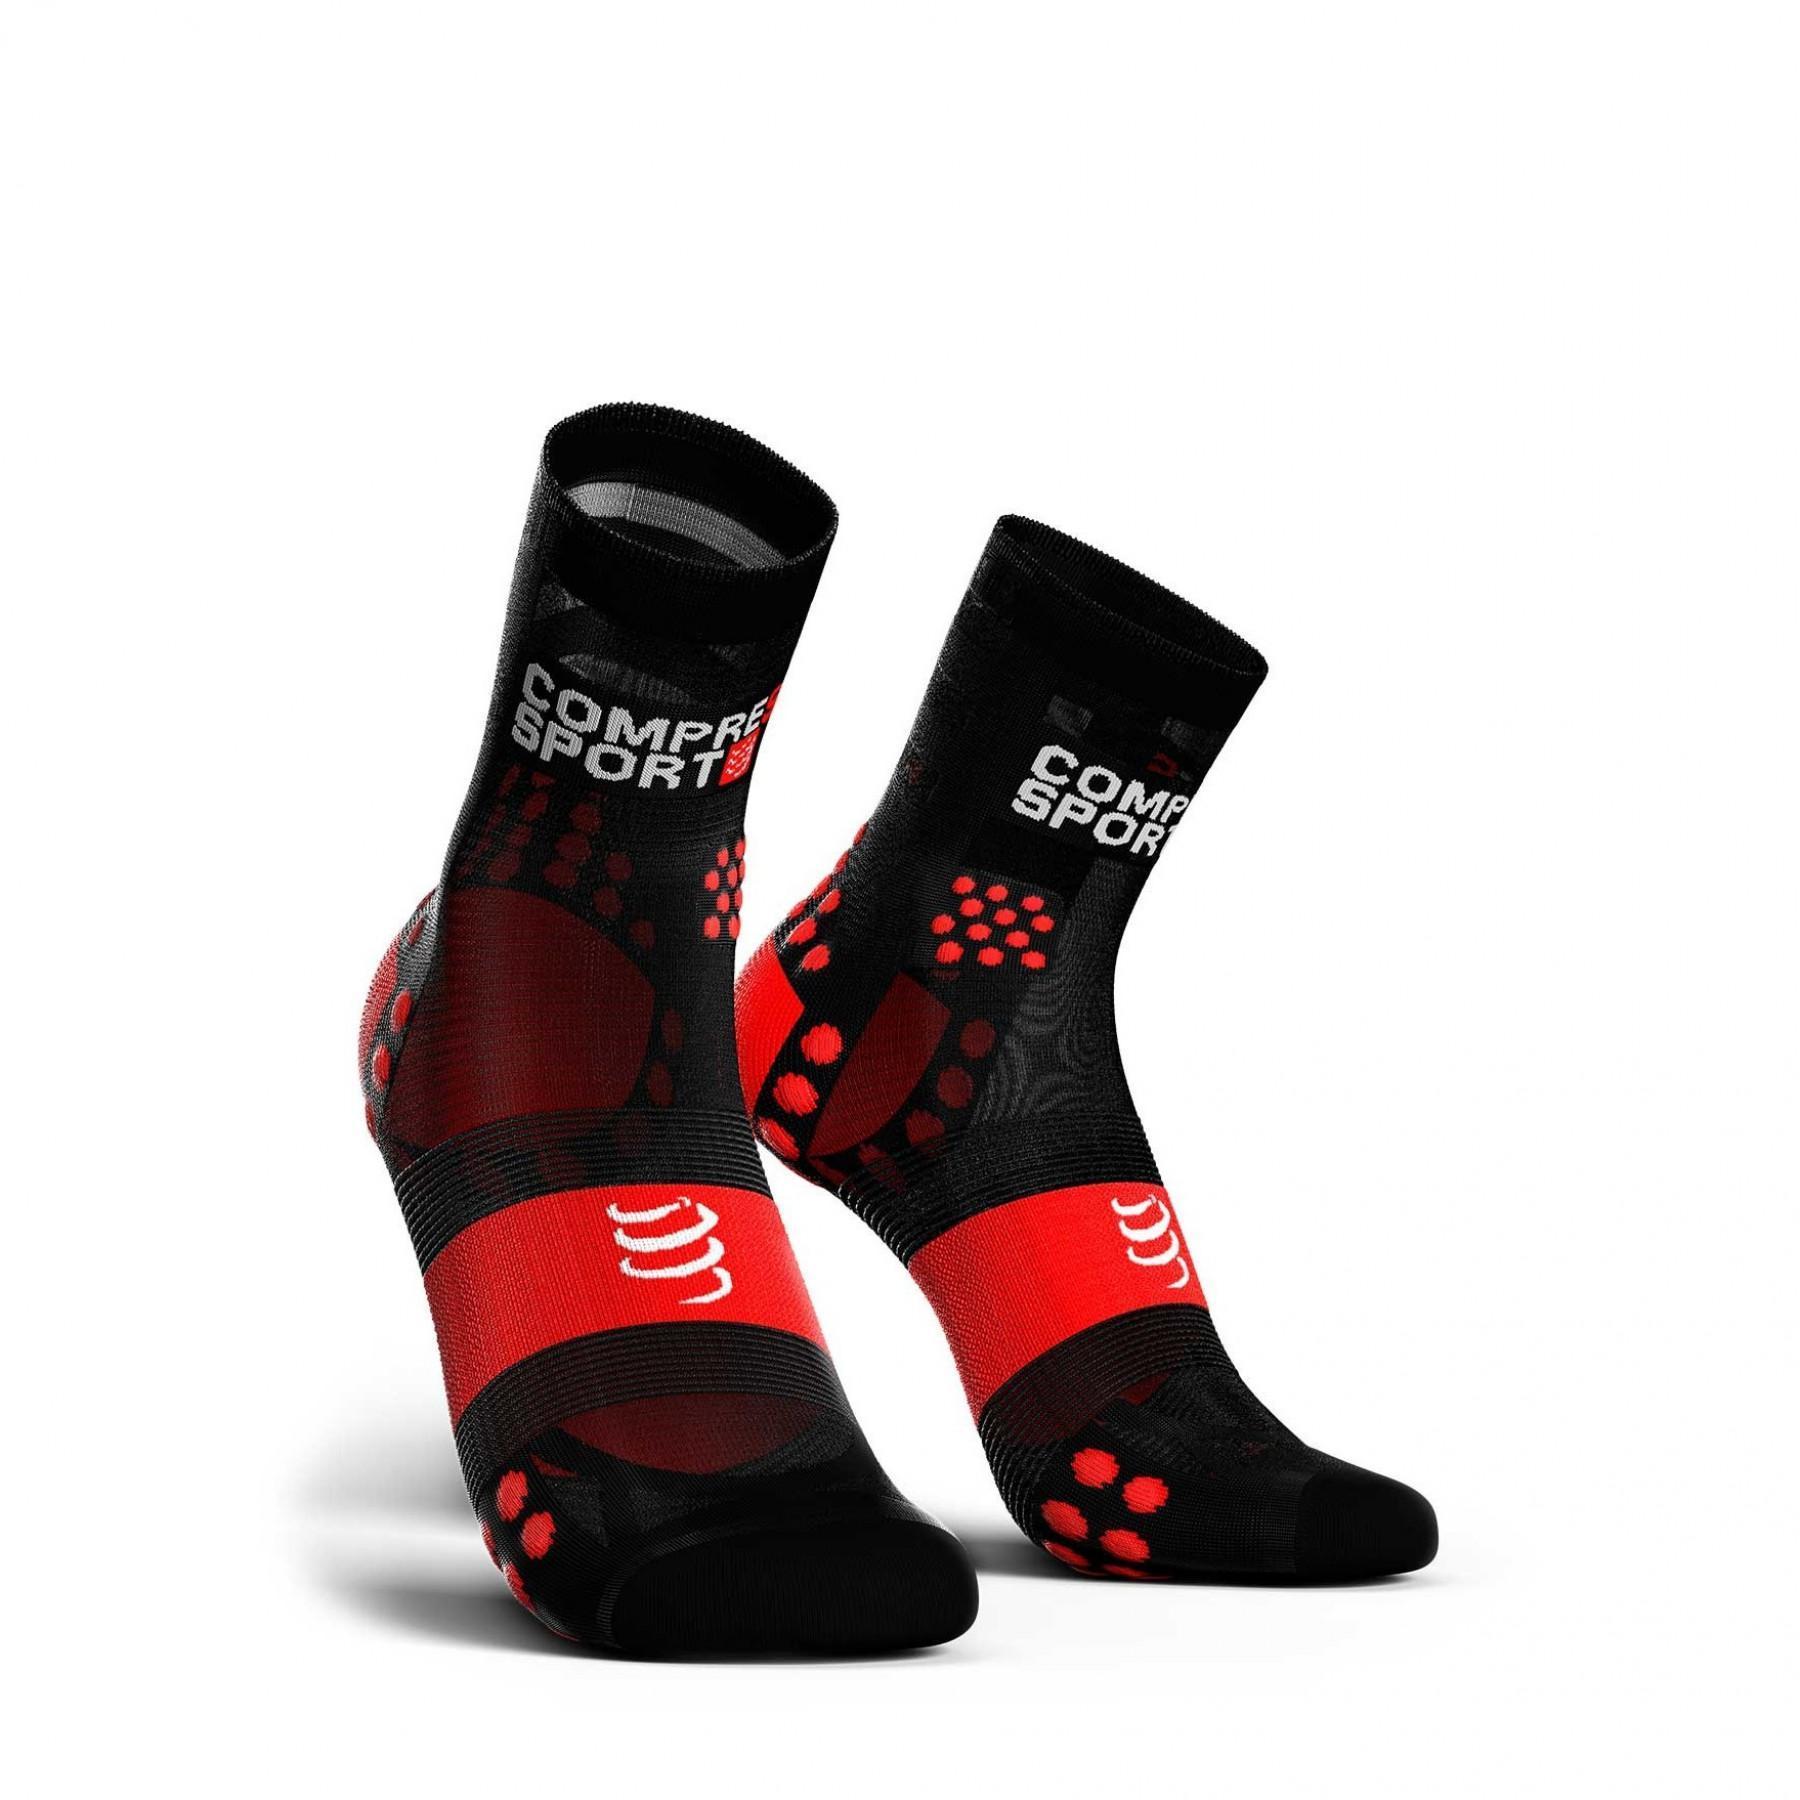 Socken Compressport Pro Racing Socks v3.0 Ultralight Run High